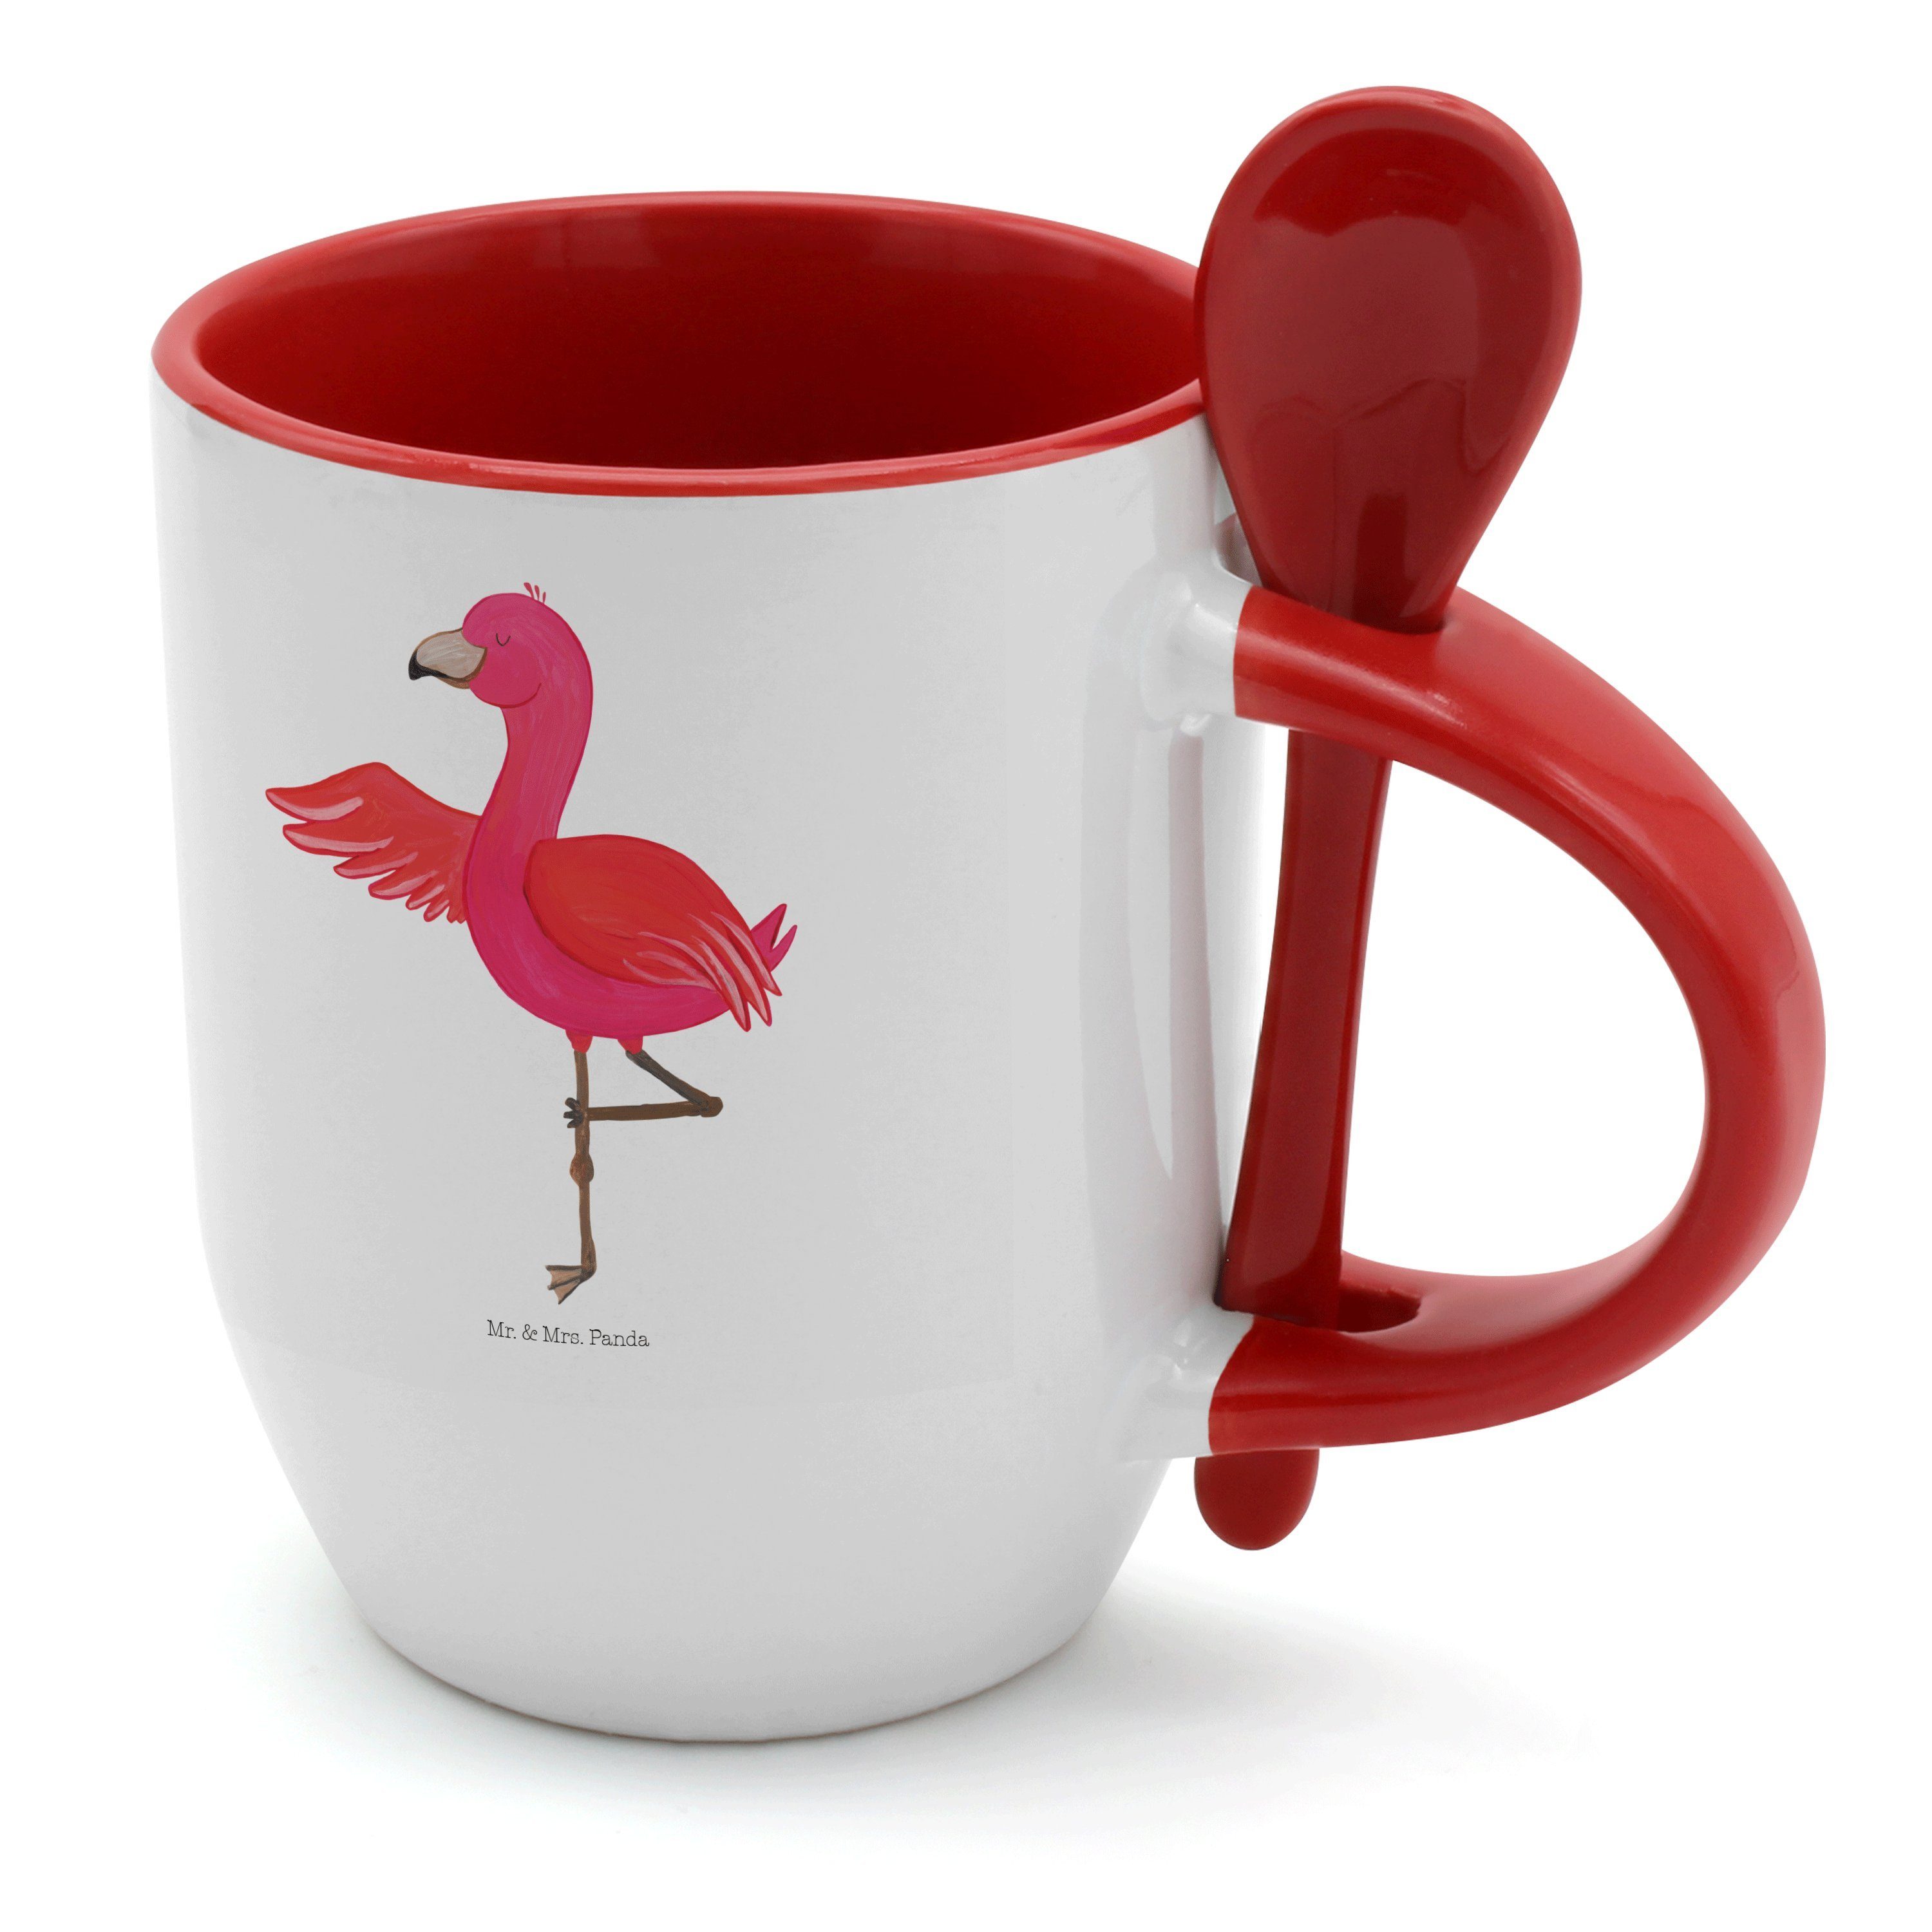 Mr. & Mrs. Panda Tasse Achtsamkeit, Löffel, Tasse Geschenk, Rosa, - Yoga Keramik - Weiß Flamingo mit